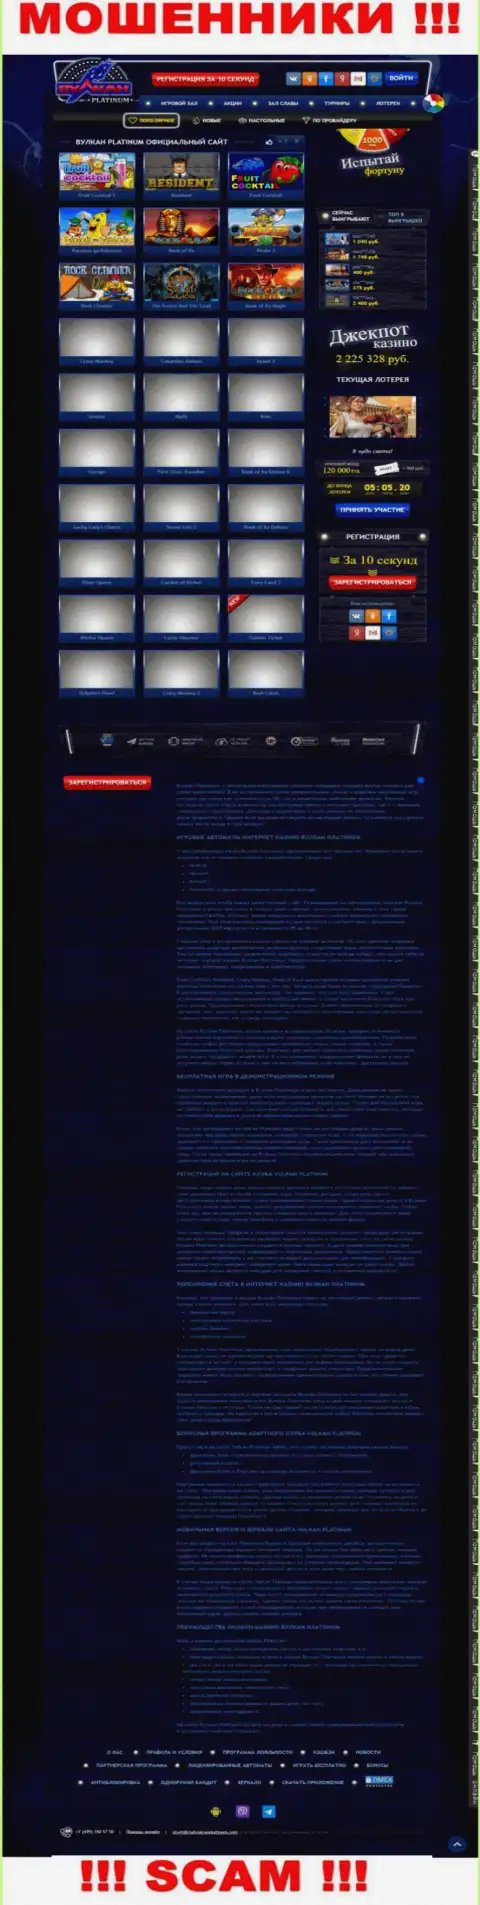 Скрин официального web-ресурса Vulcan Platinum - ClubVulcanPlatinum Com